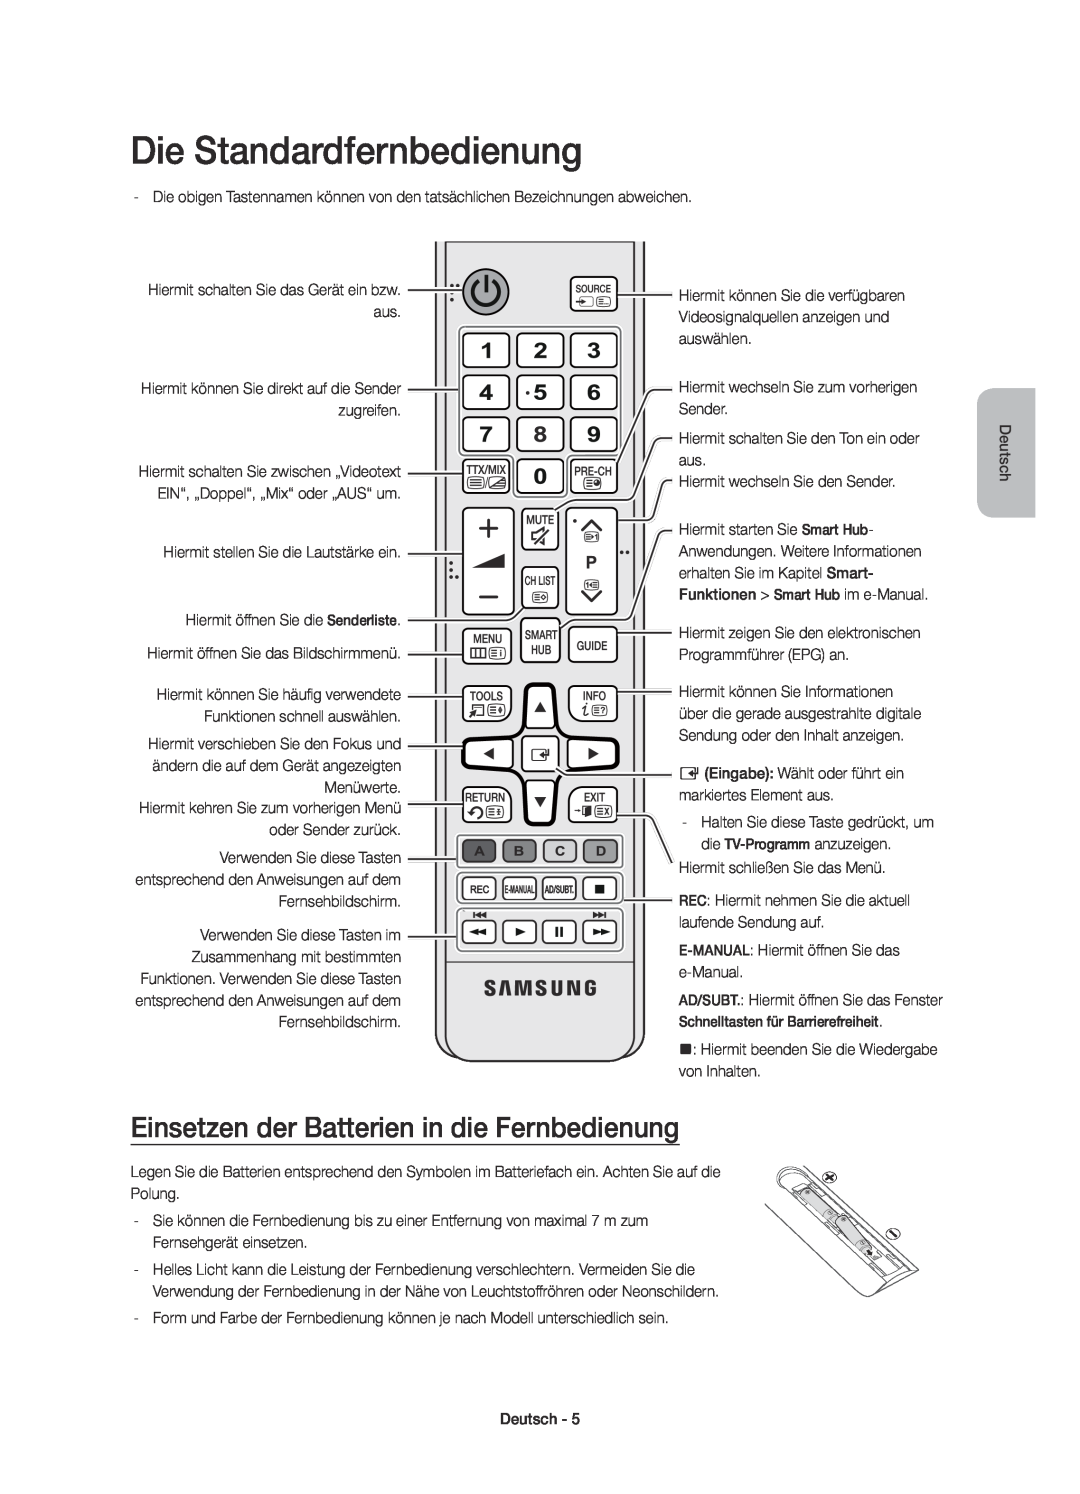 Samsung UE40JU6650SXXN, UE40JU6750UXZG manual Die Standardfernbedienung, Einsetzen der Batterien in die Fernbedienung 